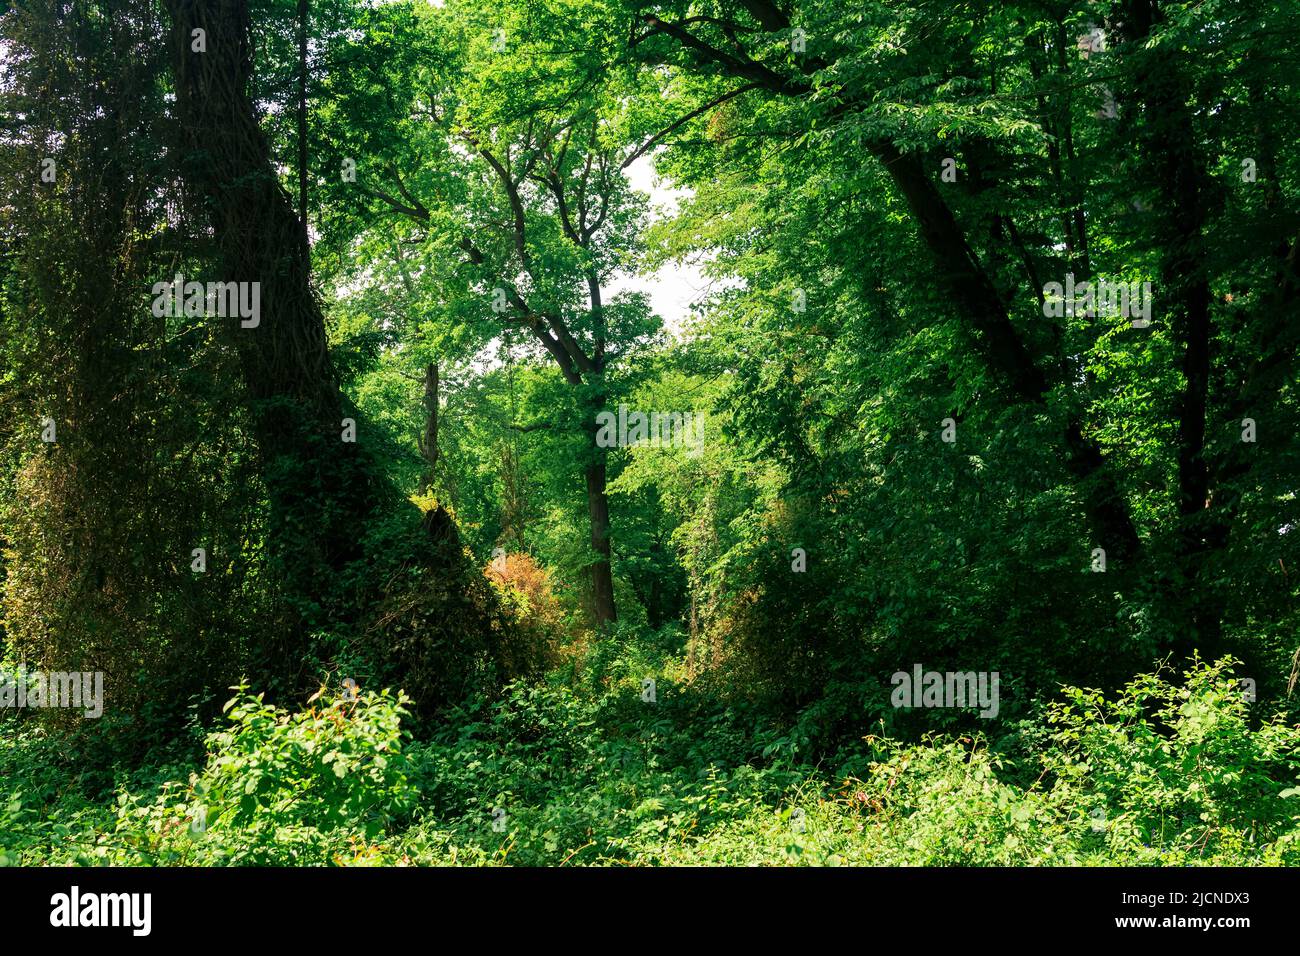 paesaggio forestale, addensati di alberi intrecciati di liane, in una foresta subtropicale decidua Foto Stock